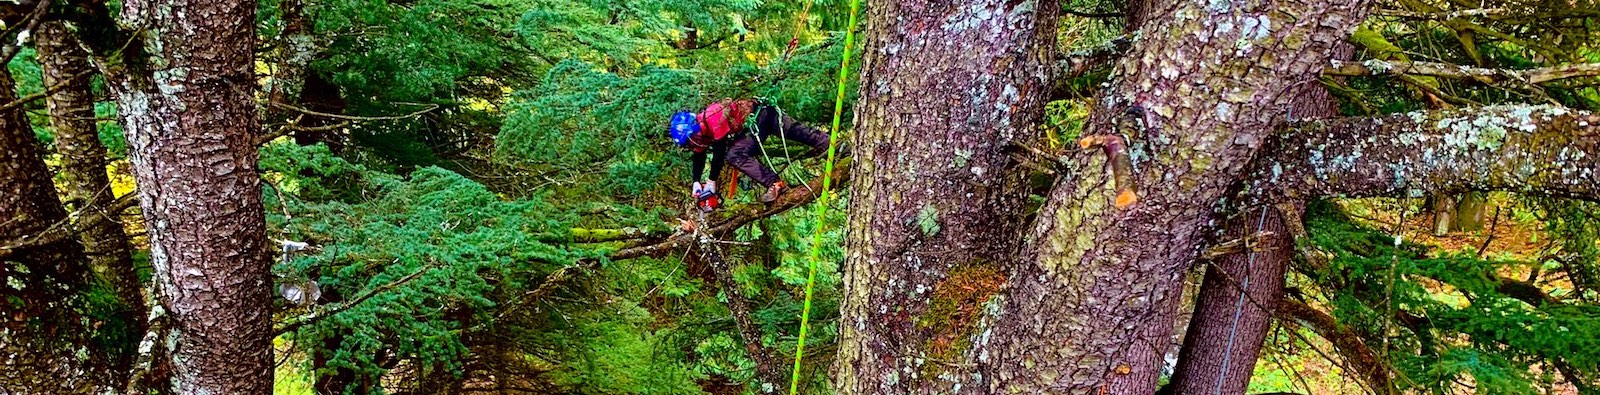 emergency tree services milwaukie Arborist oregon tree care